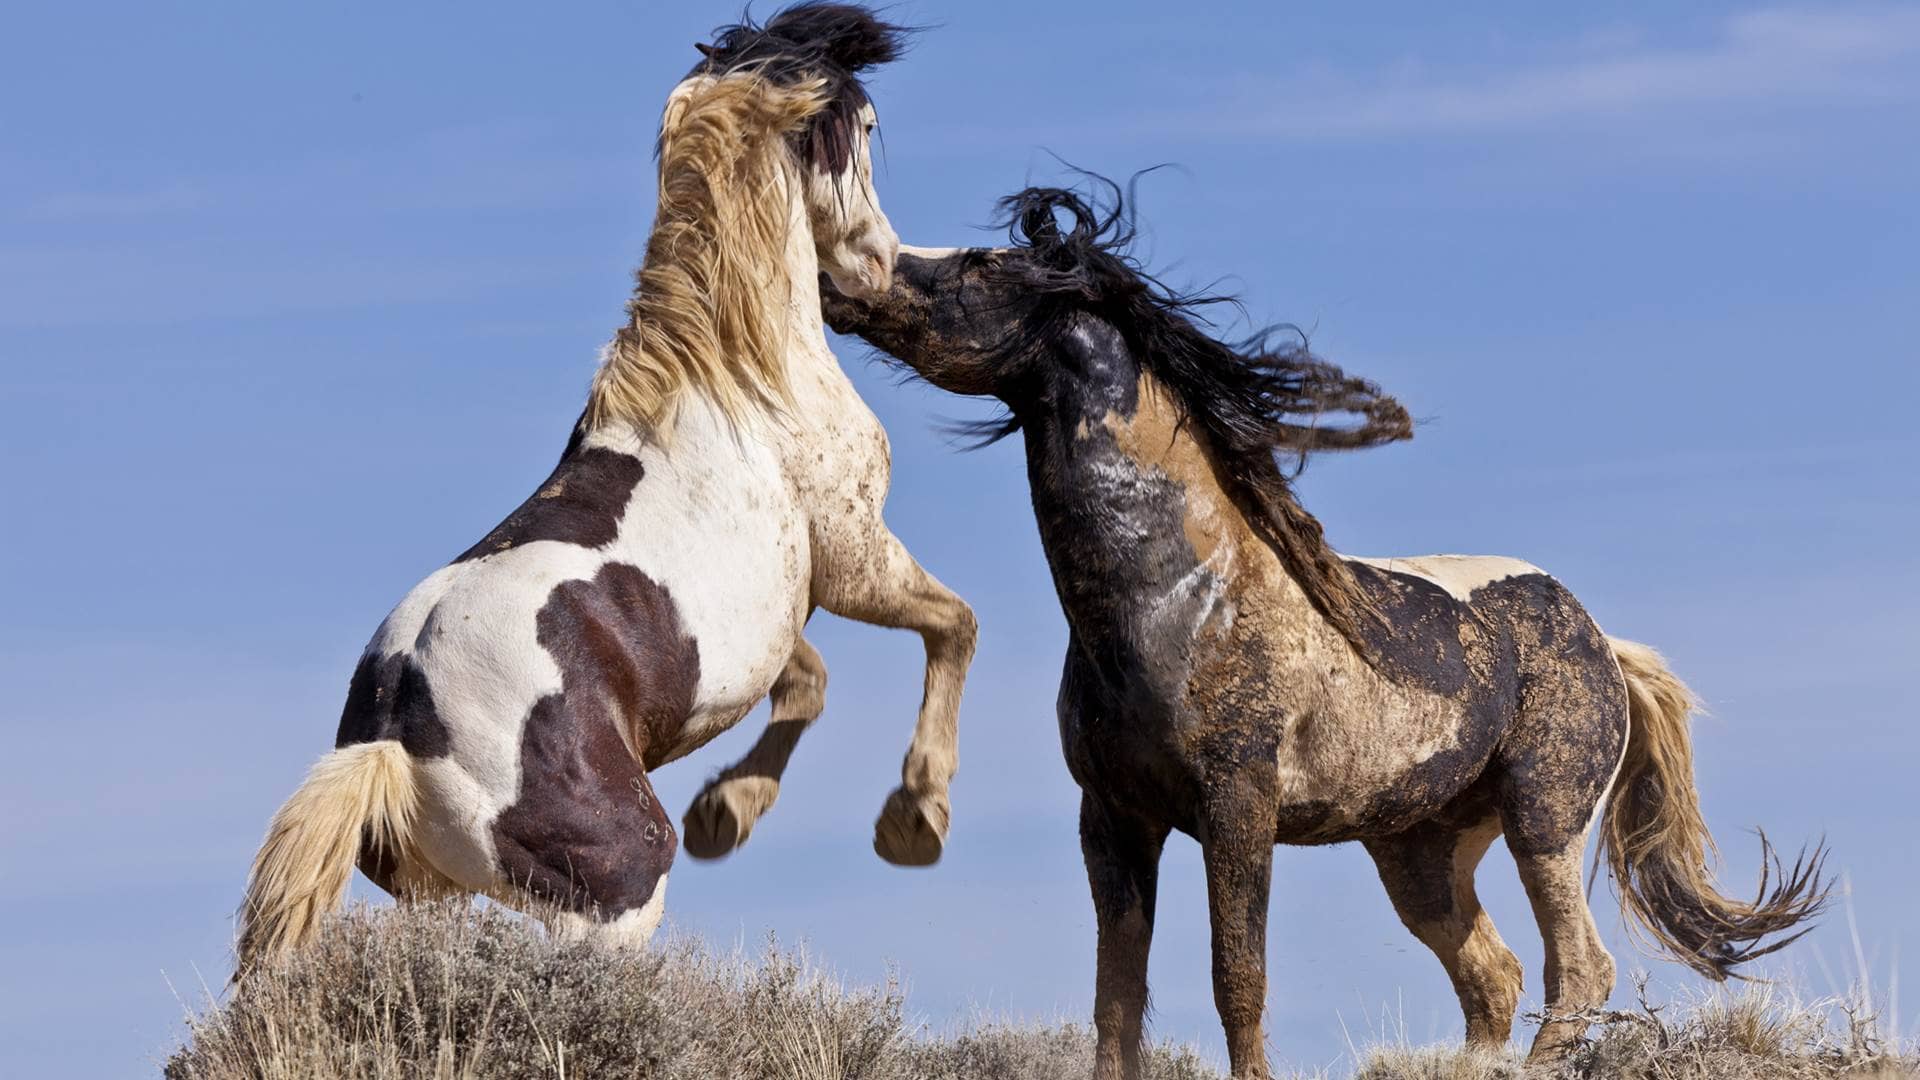 Мустанг (дикая лошадь)– описание, как выглядит, где обитает, фото